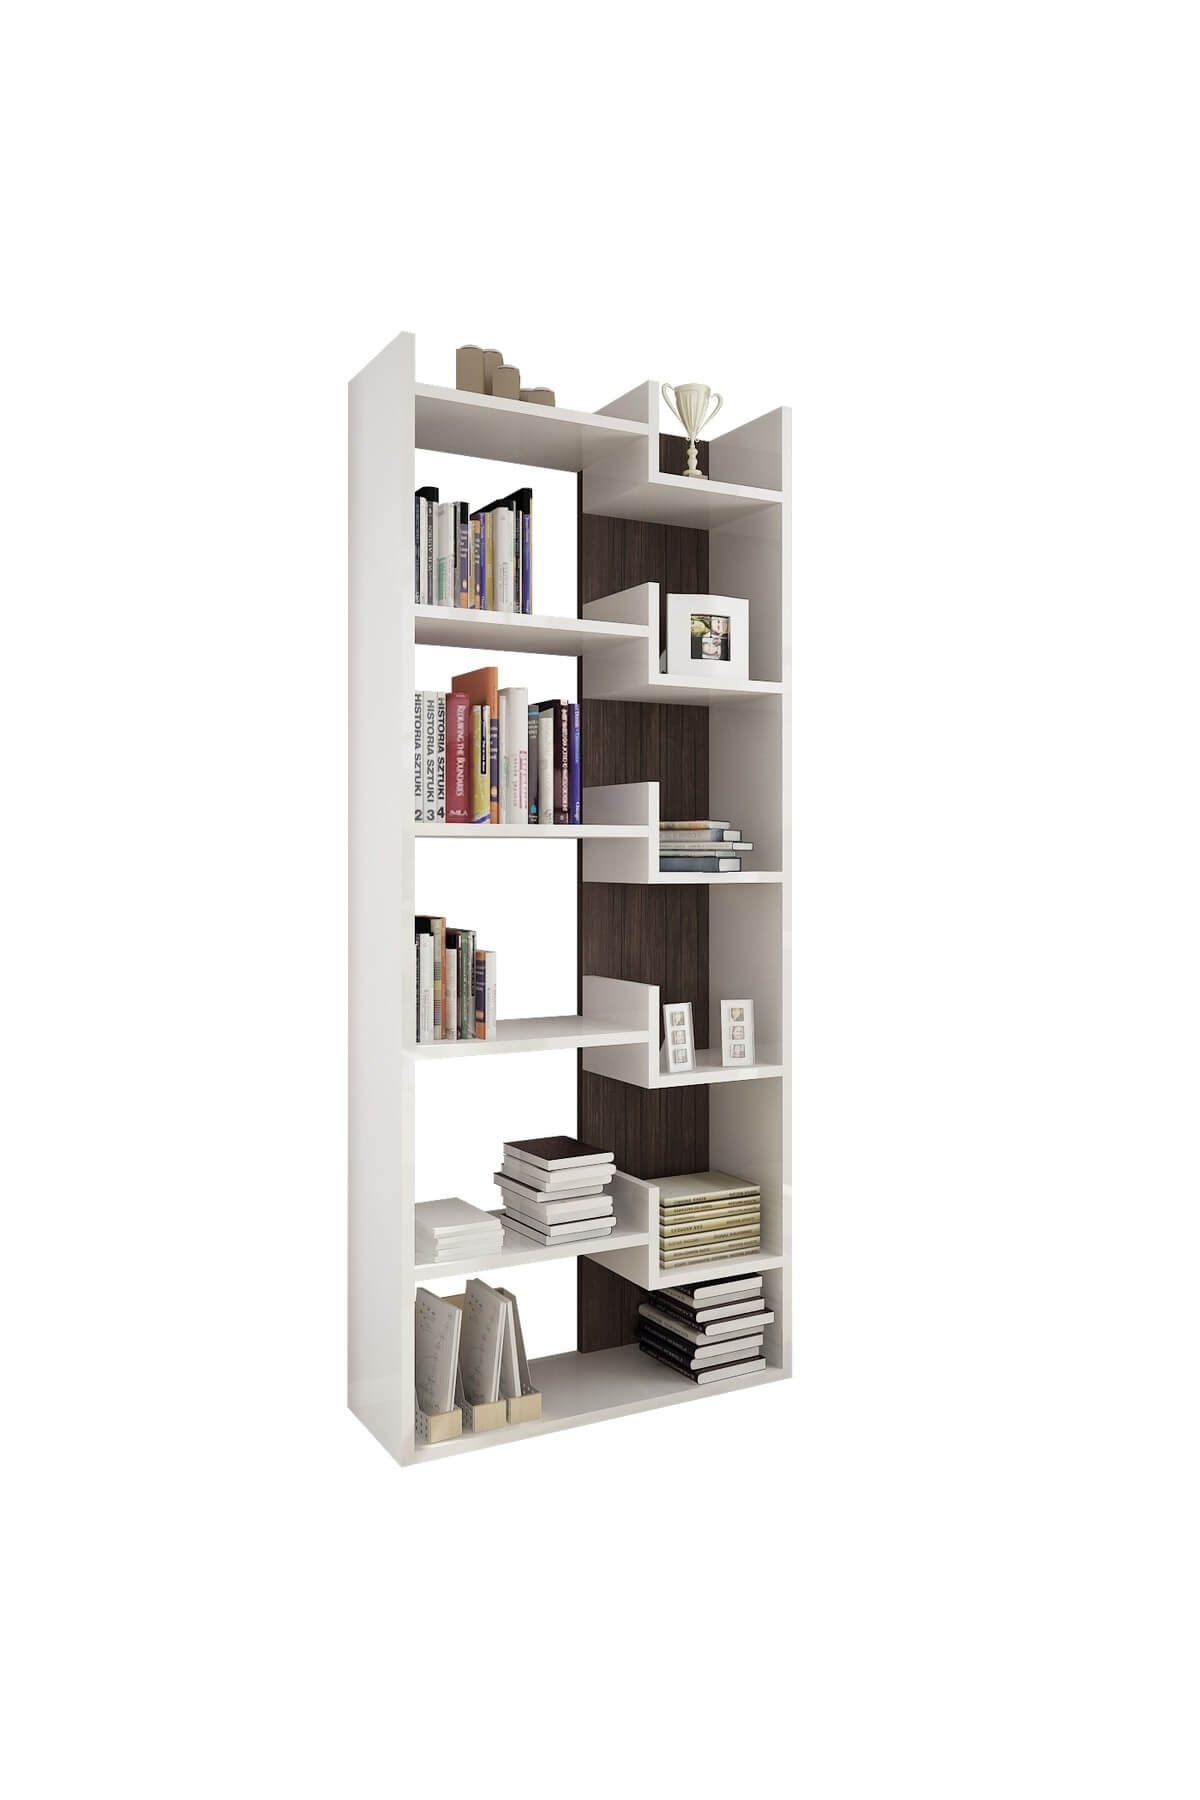 Rani Mobilya K3 Tasarım Kitaplık 6 Raflı Beyaz Ceviz Ev Ofis Kütüphane